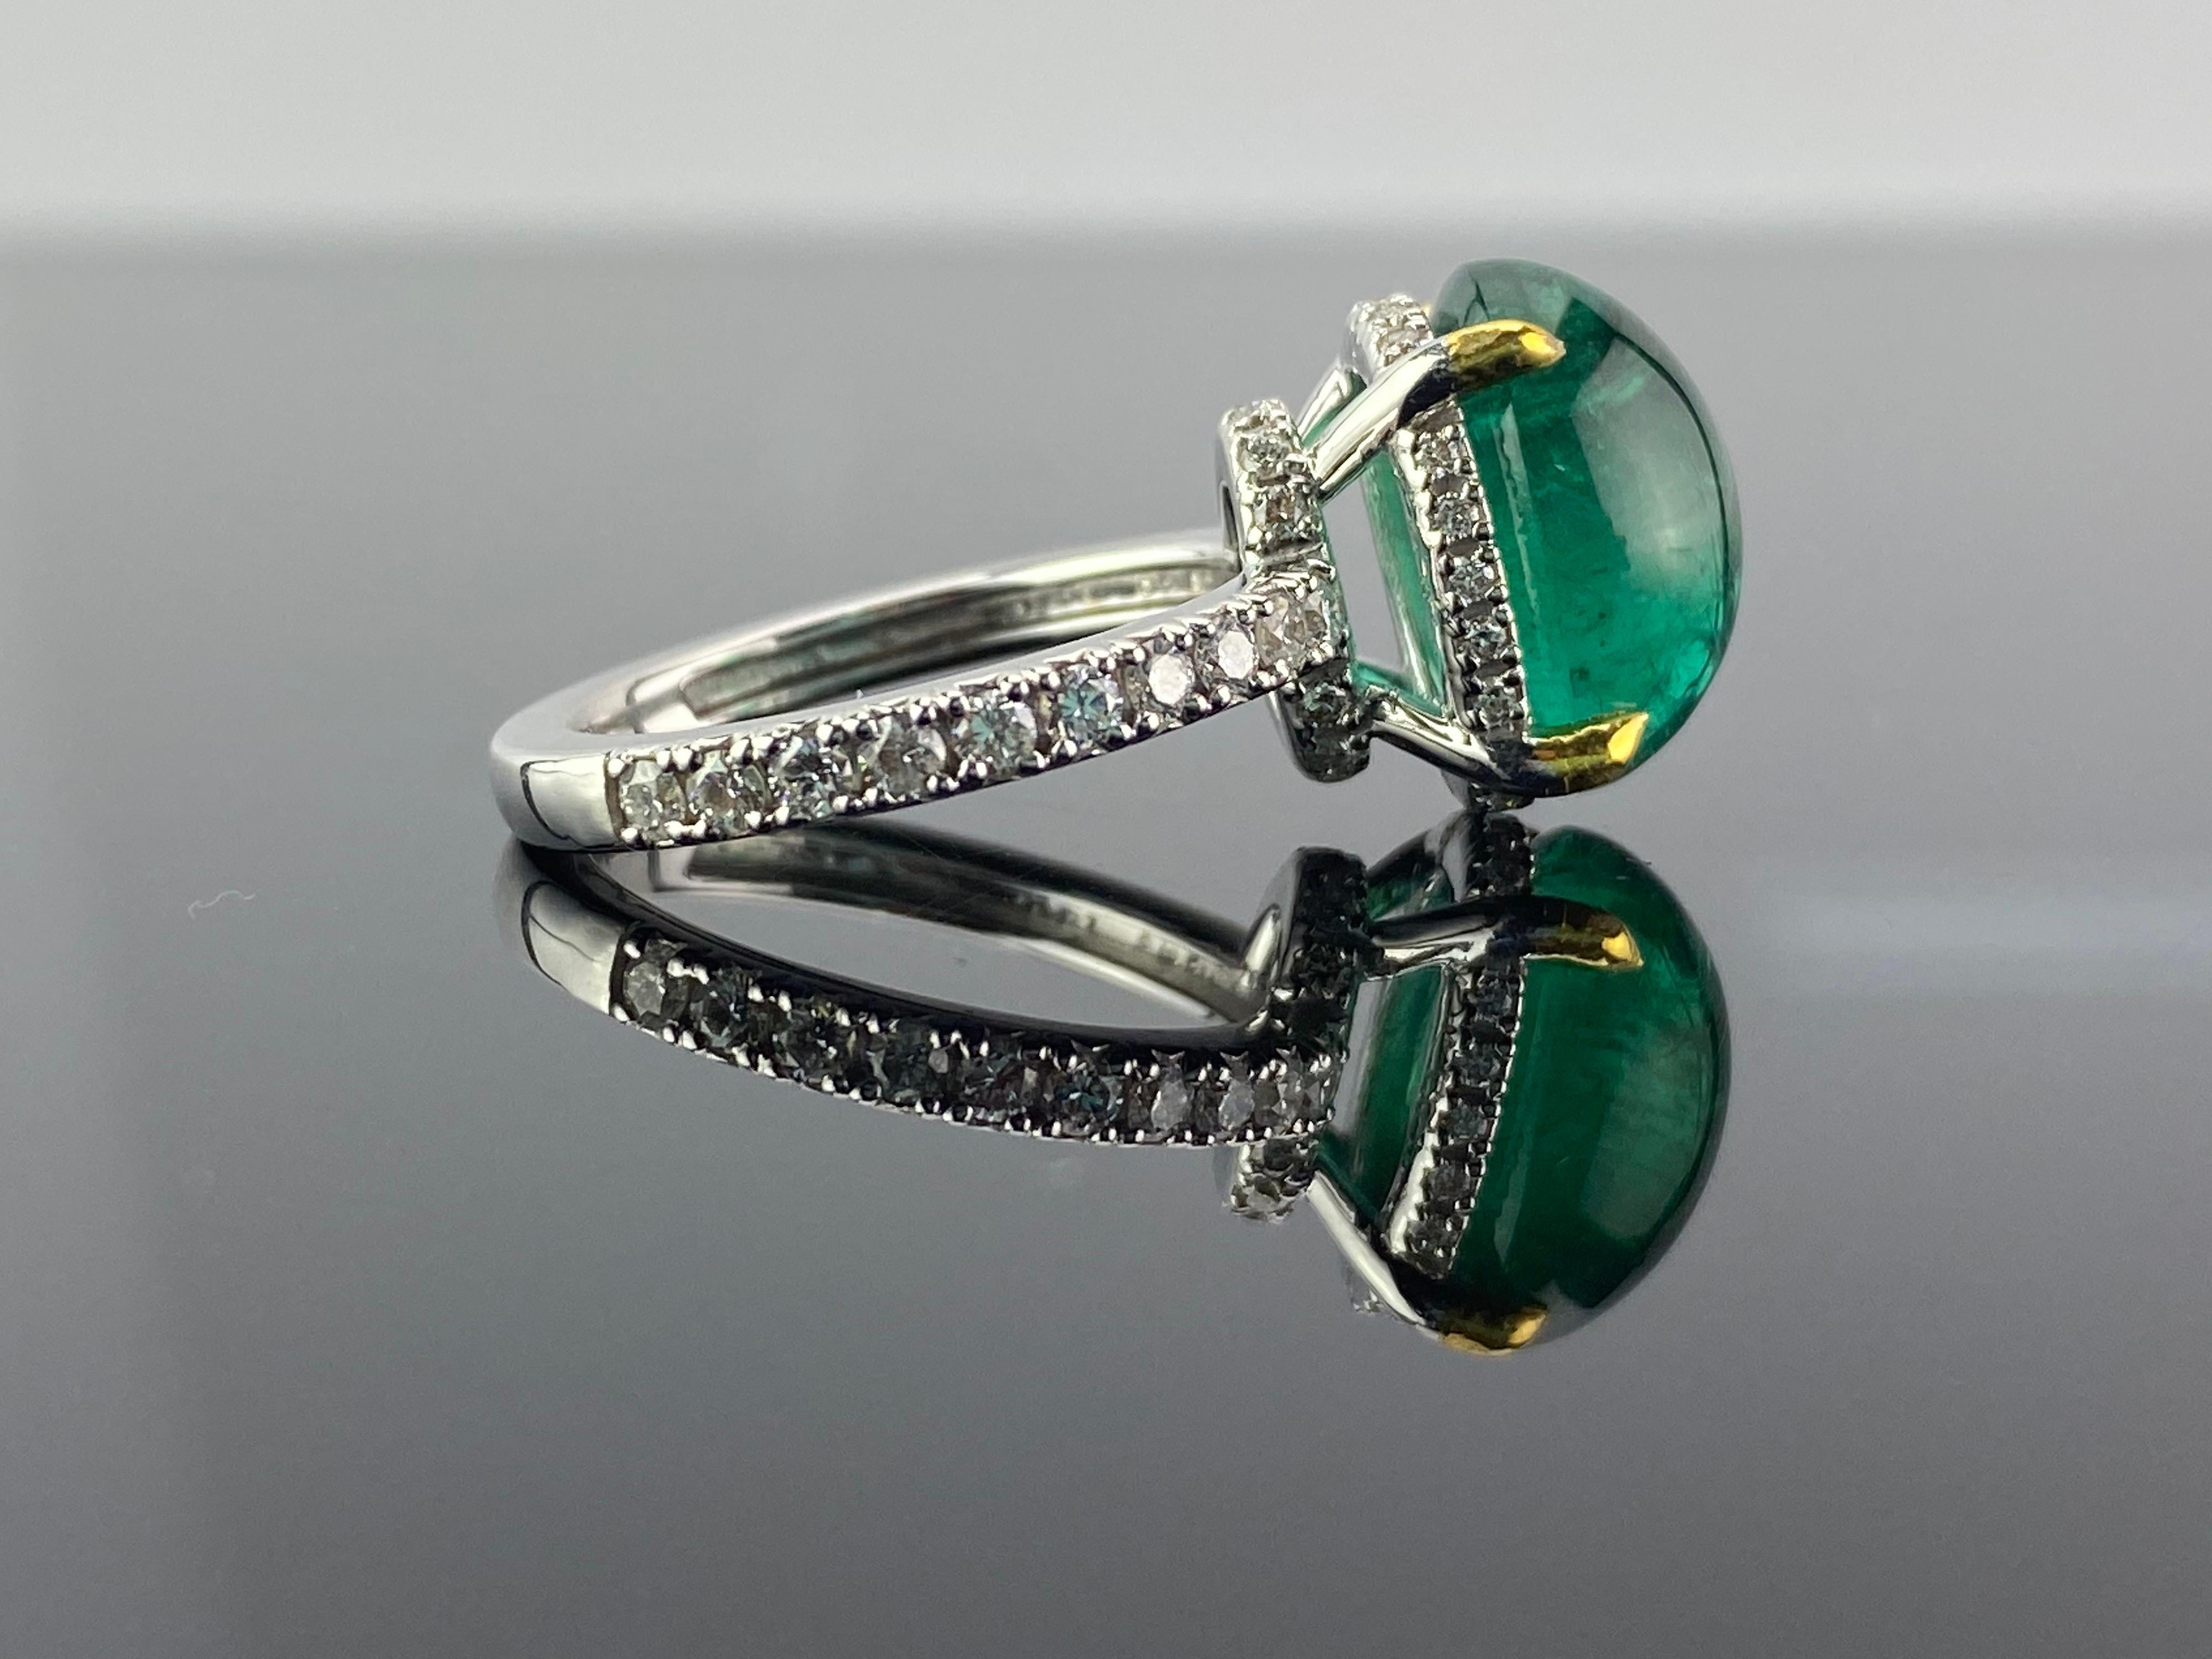 Ein schlichter und eleganter Verlobungsring mit 6,02 Karat Cabochon-Smaragd aus Sambia und 0,75 Karat weißem Diamant. Der Smaragd ist transparent und weist nur wenige natürliche Einschlüsse auf. Der Schliff des Steins ist ausgezeichnet, der Stein